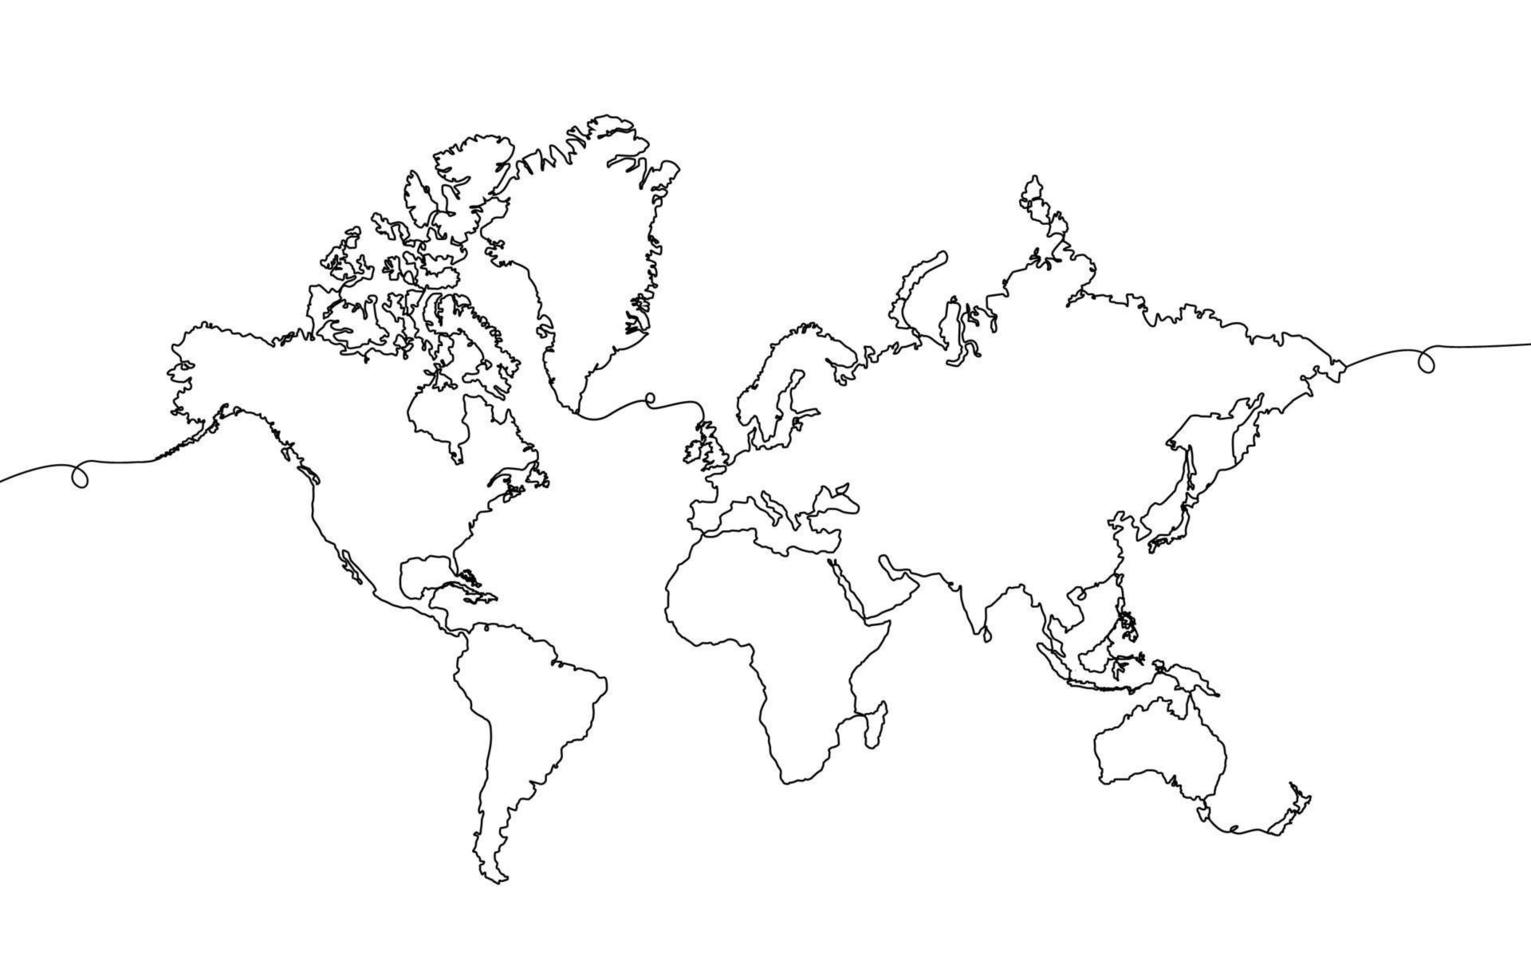 ett stroke värld Karta vektor